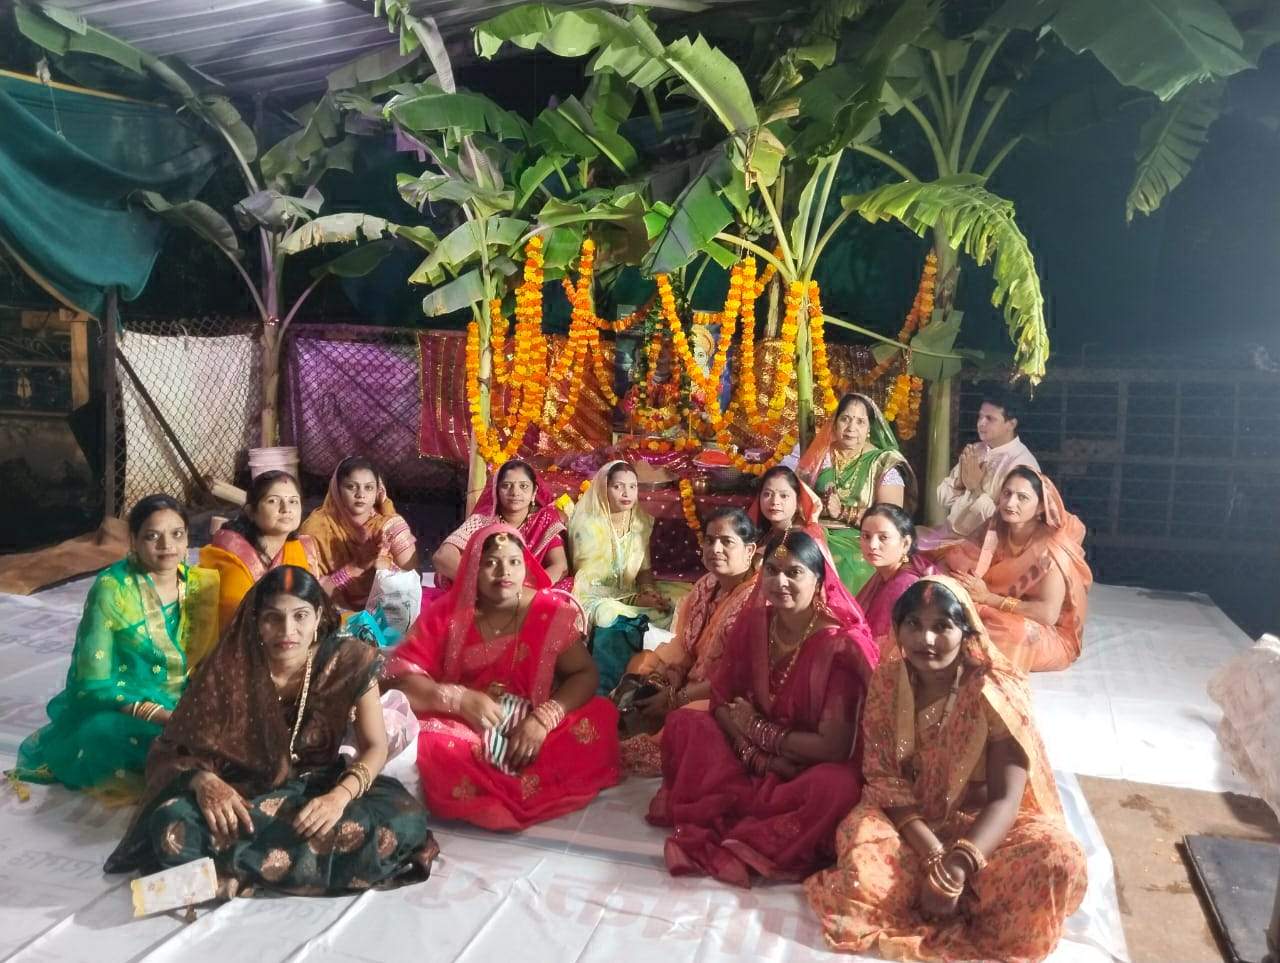  हरितालिका तीज पर महिलाओं ने की शिव-पार्वती की पूजा